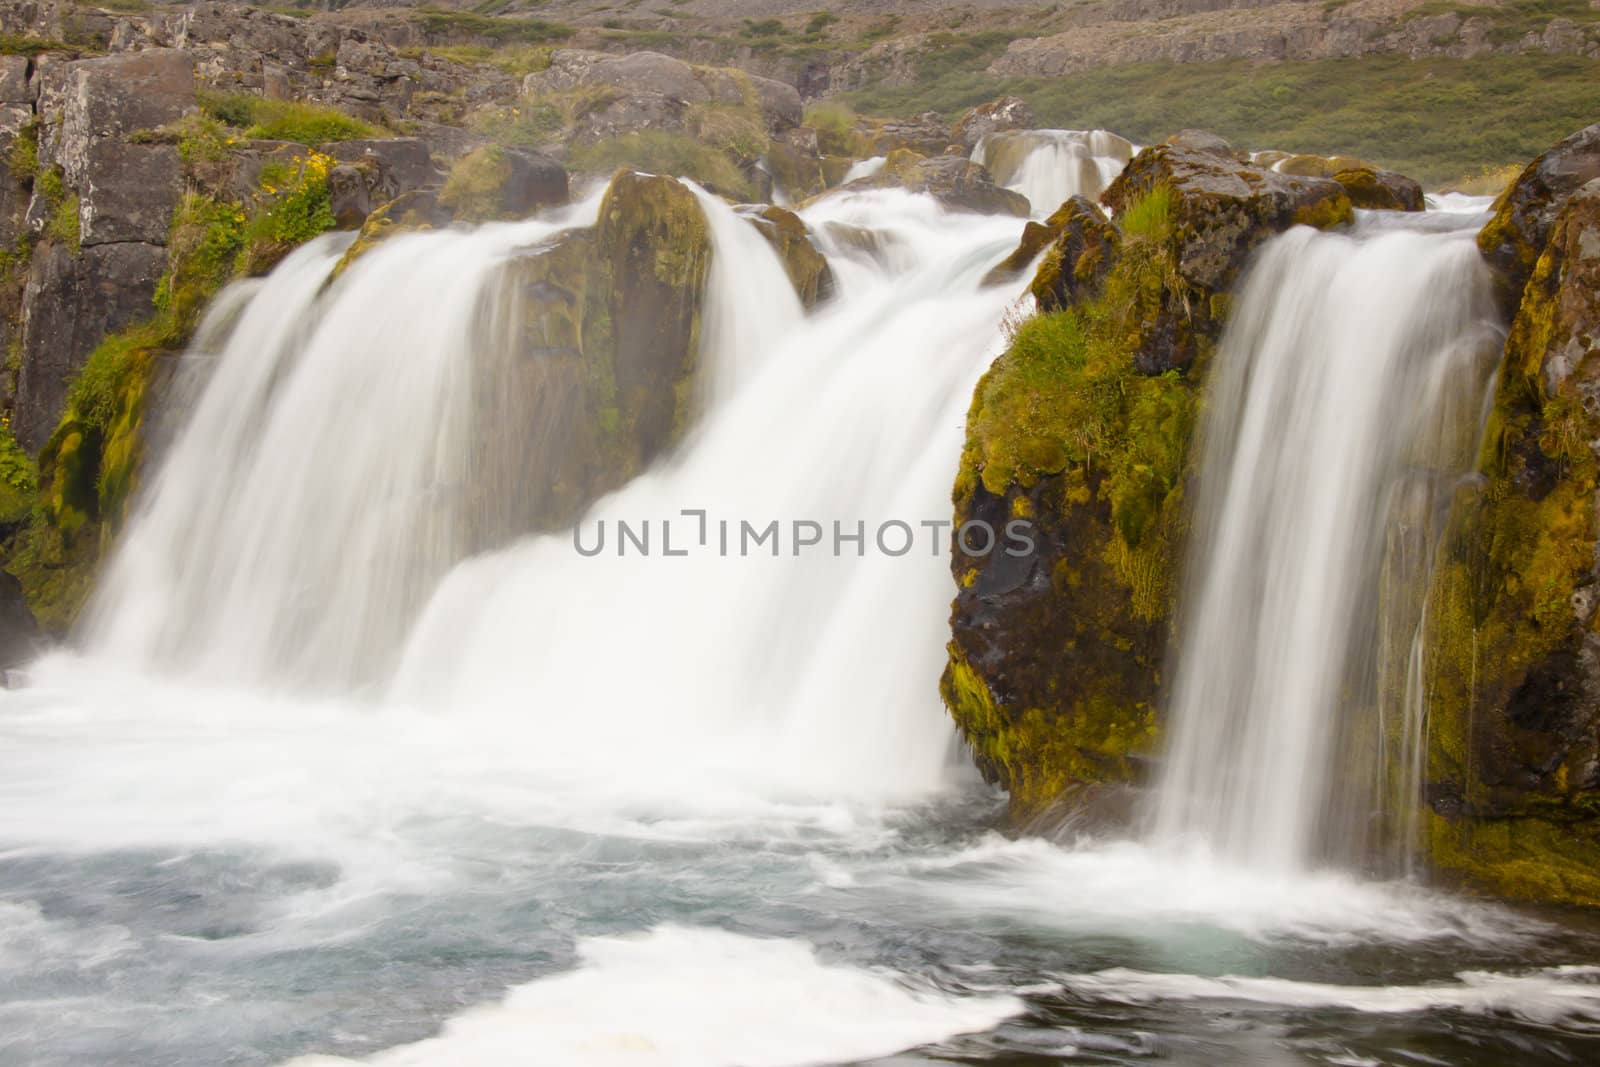 Part of Dynjandi beauty waterfall in Western Iceland.